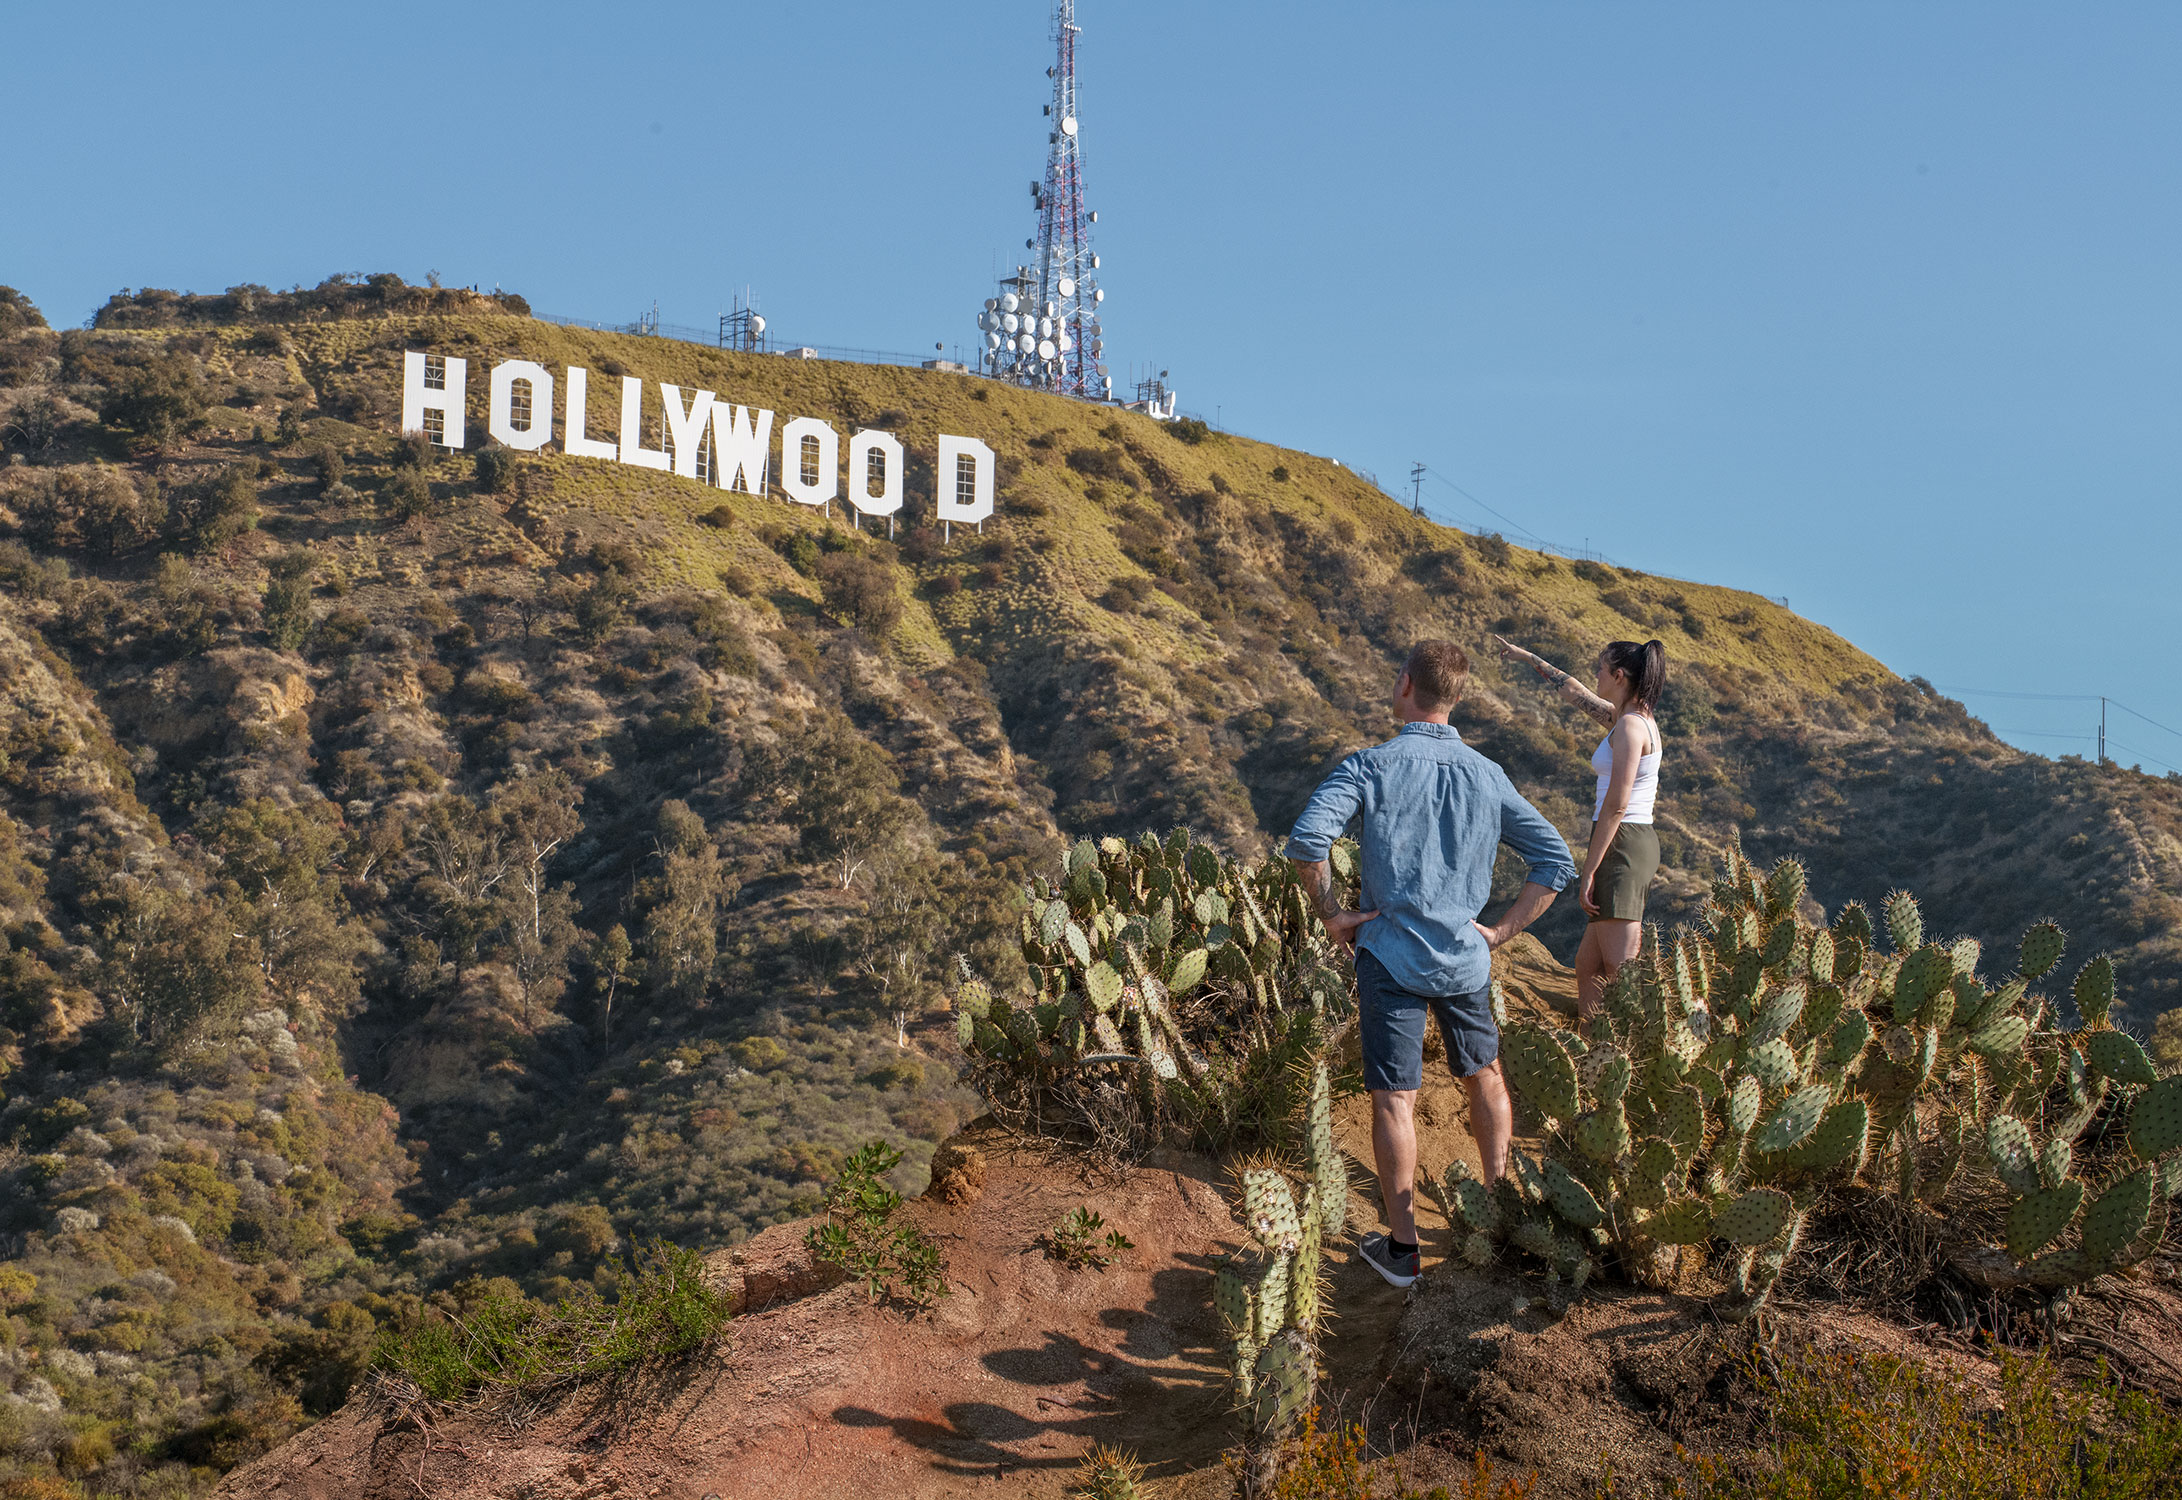 AVABLU-Hollywood-Sign-lifestyle-web